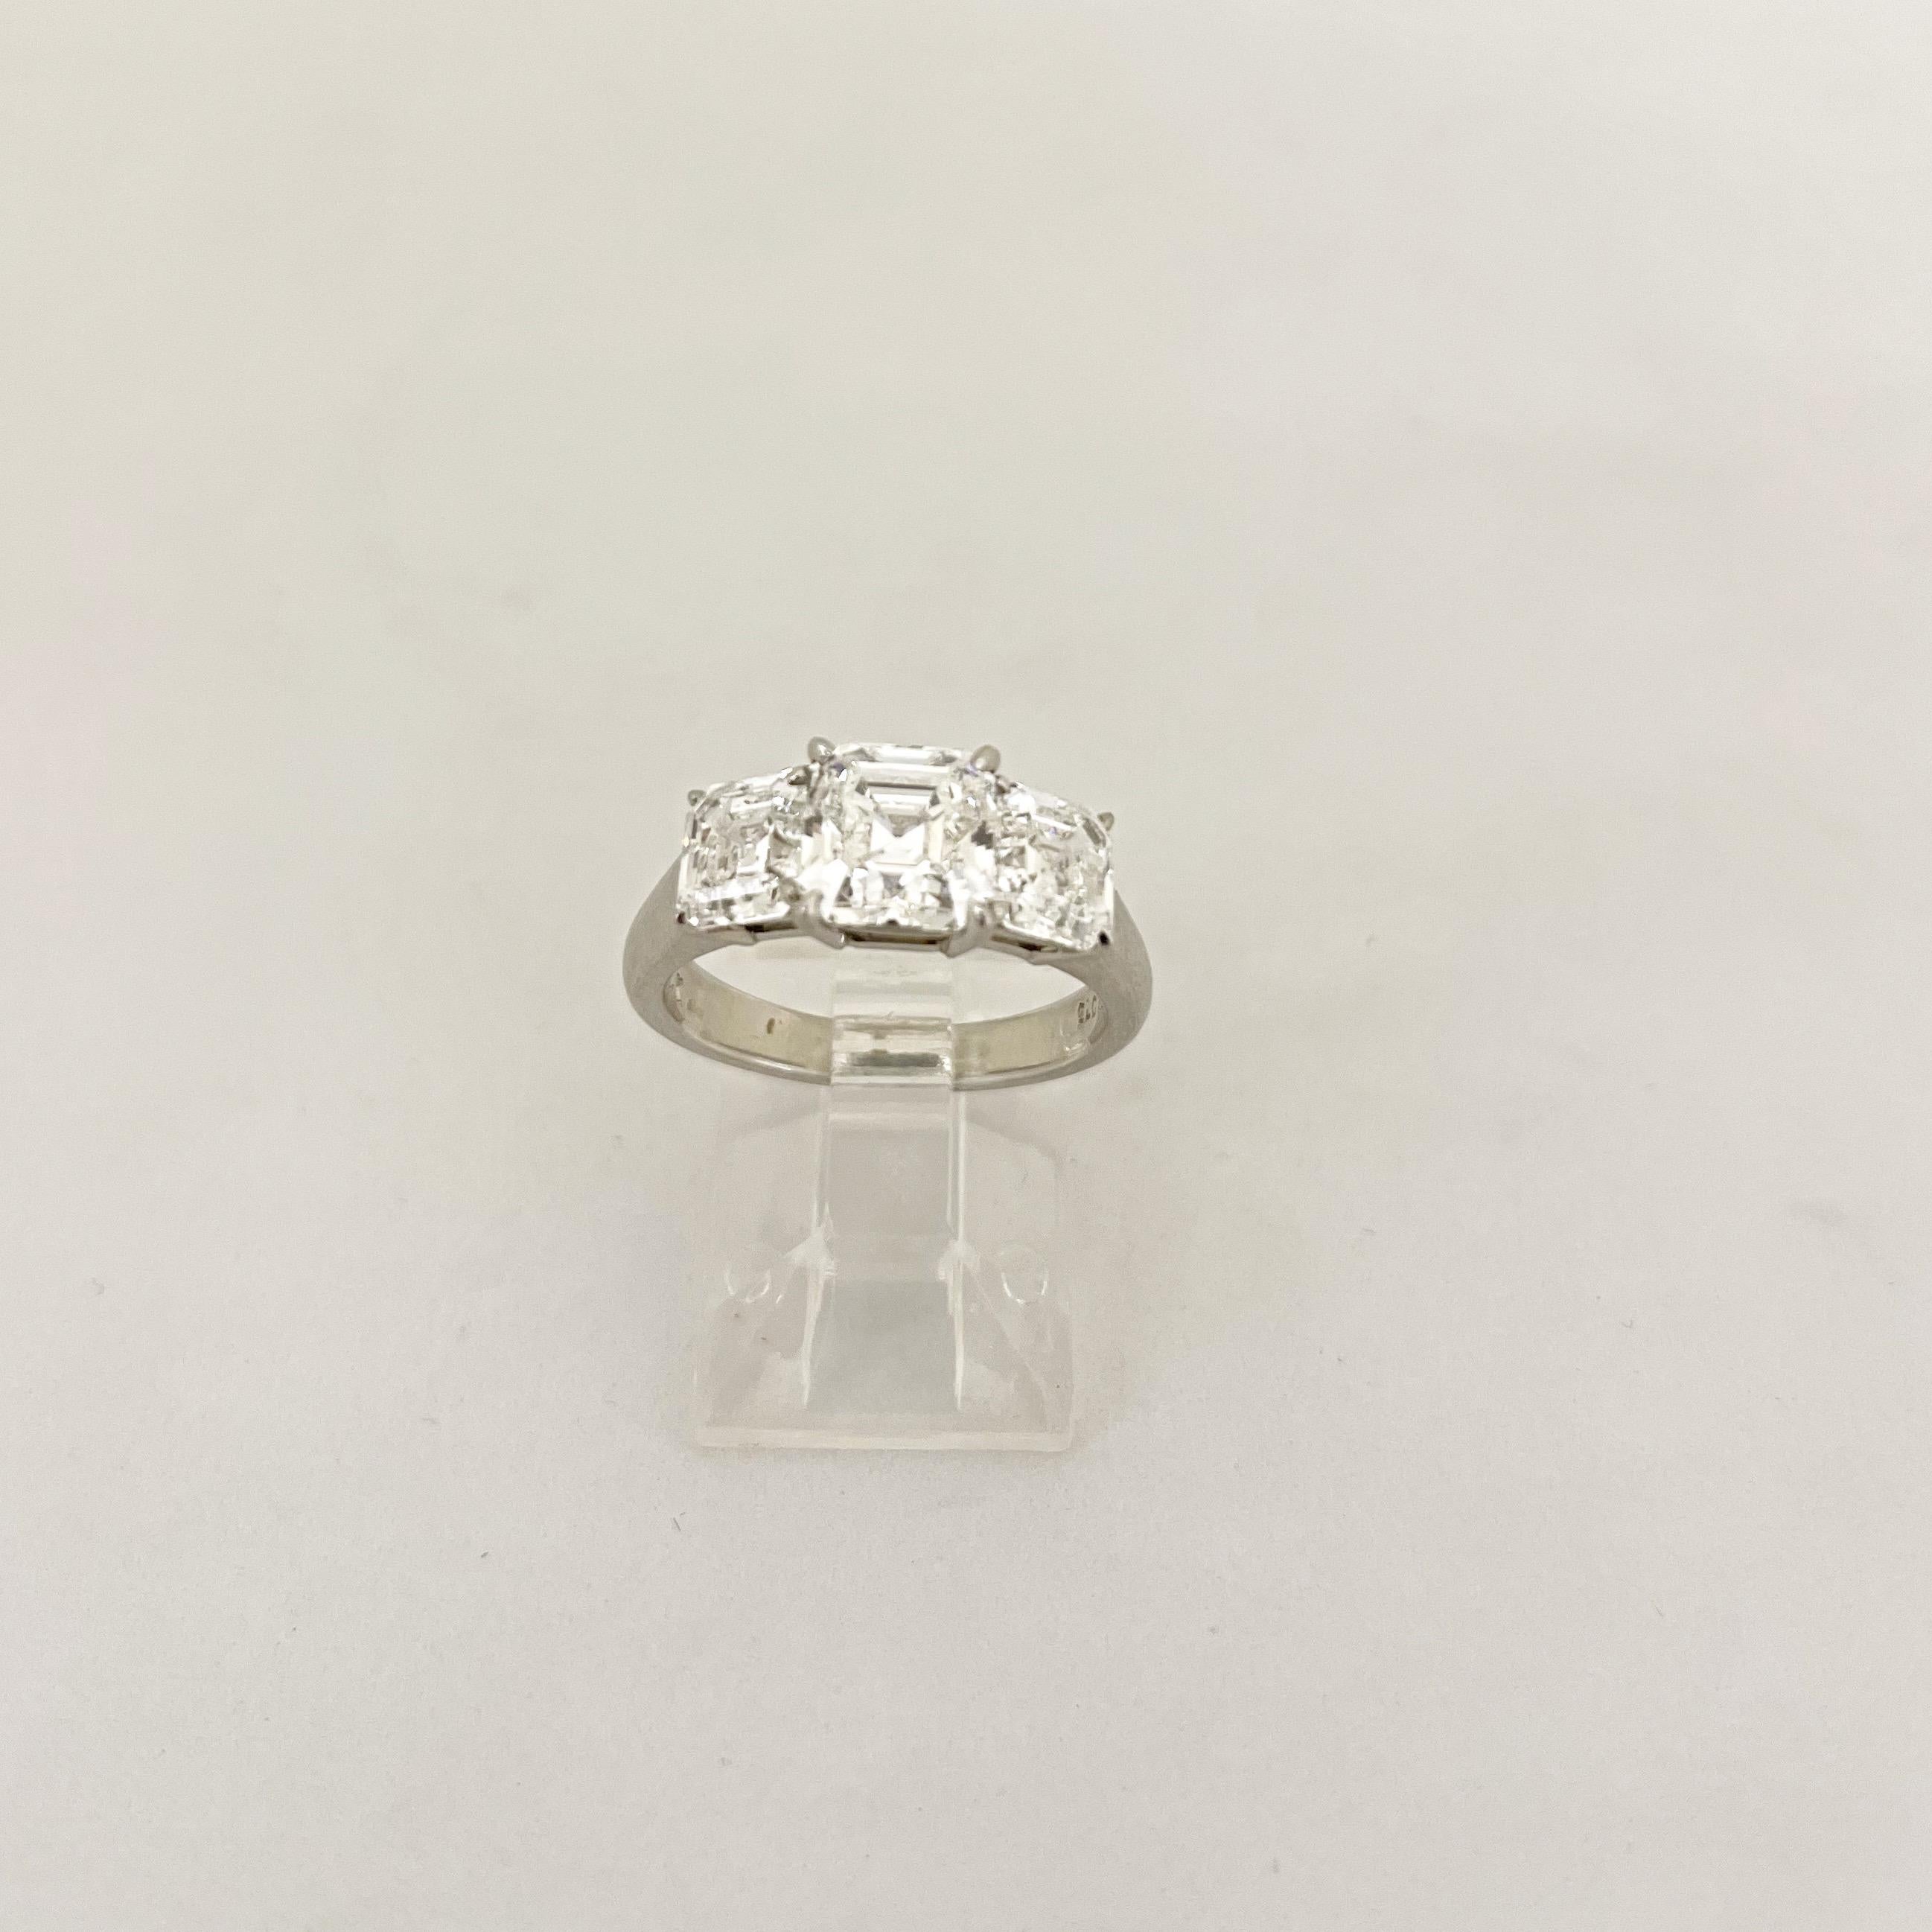 Cellini GIA Certified 3 Stone Square Emerald Cut E color Diamond Ring For Sale 1